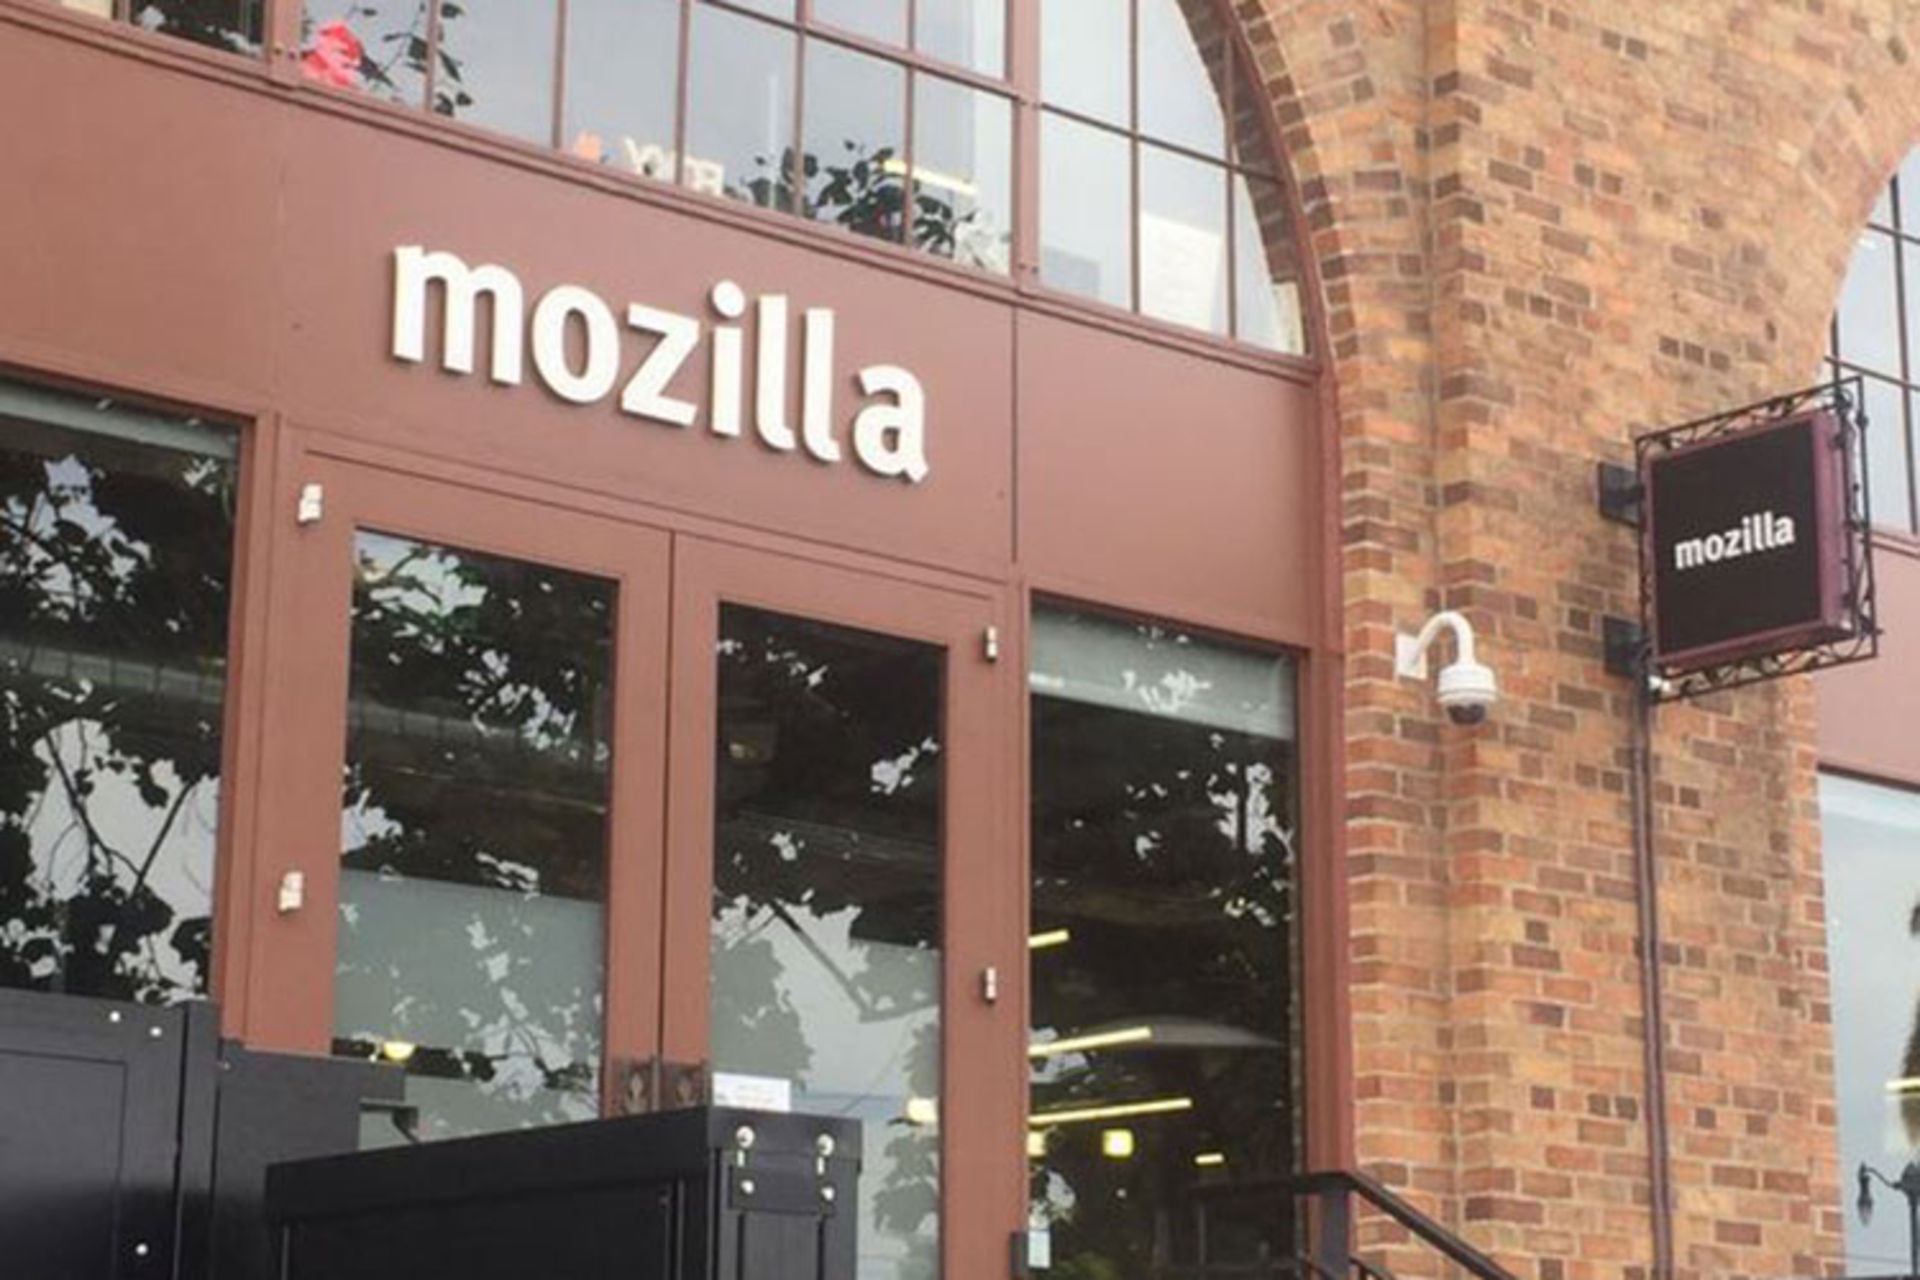 بنیاد موزیلا / Mozilla Foundation